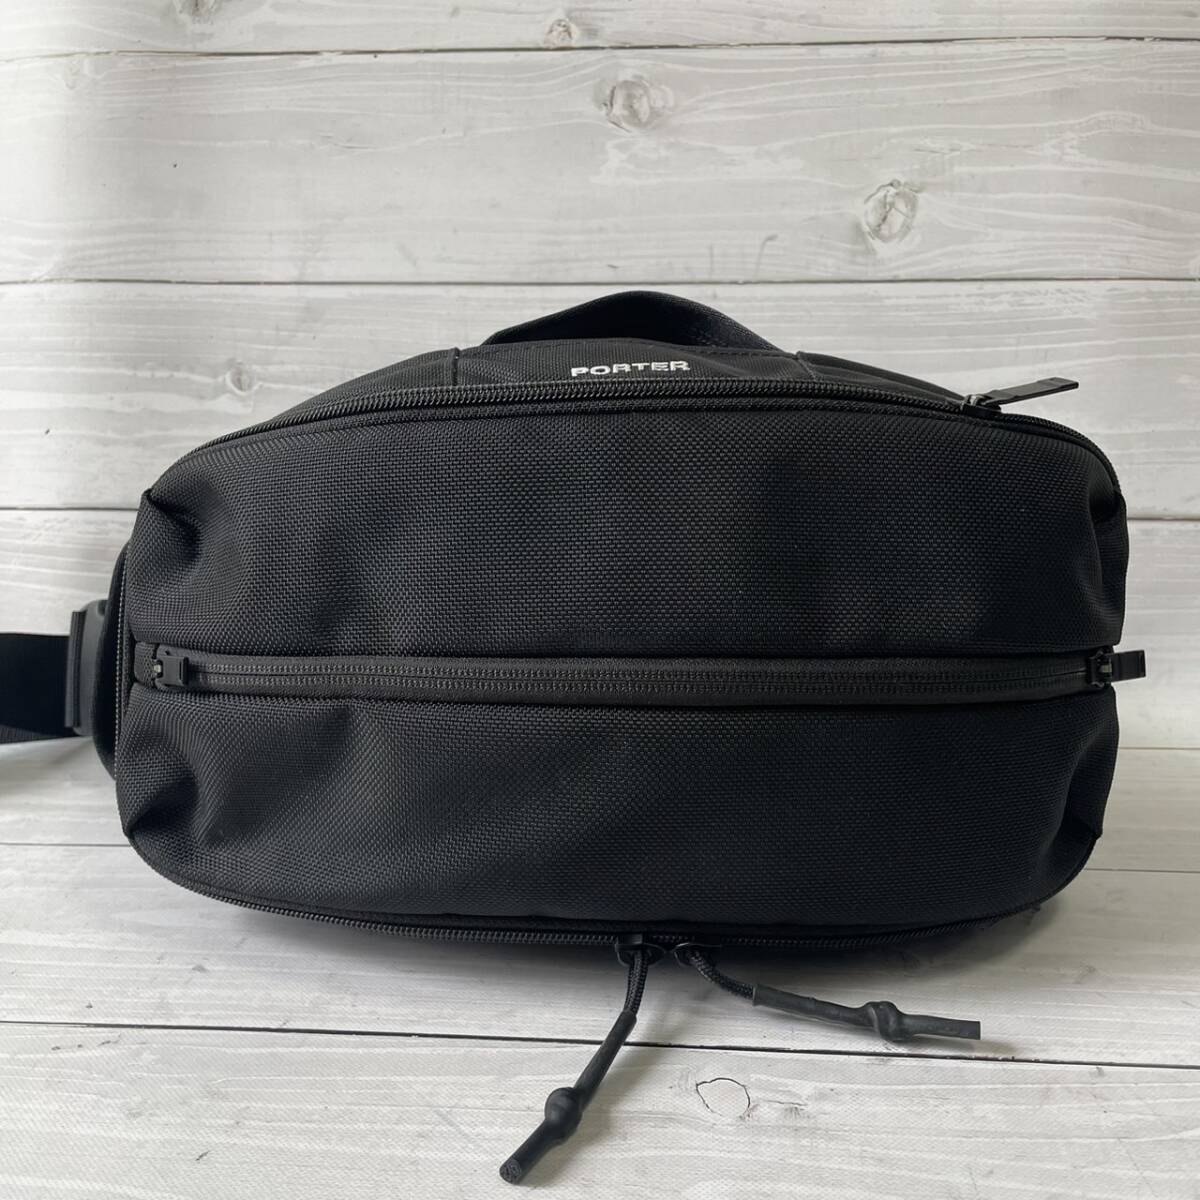 [ не использовался класс ] Porter PORTER Yoshida bag выше боковой sling сумка на плечо 2way черный чёрный нейлон наклонный .. вышивка Logo мужской сумка 